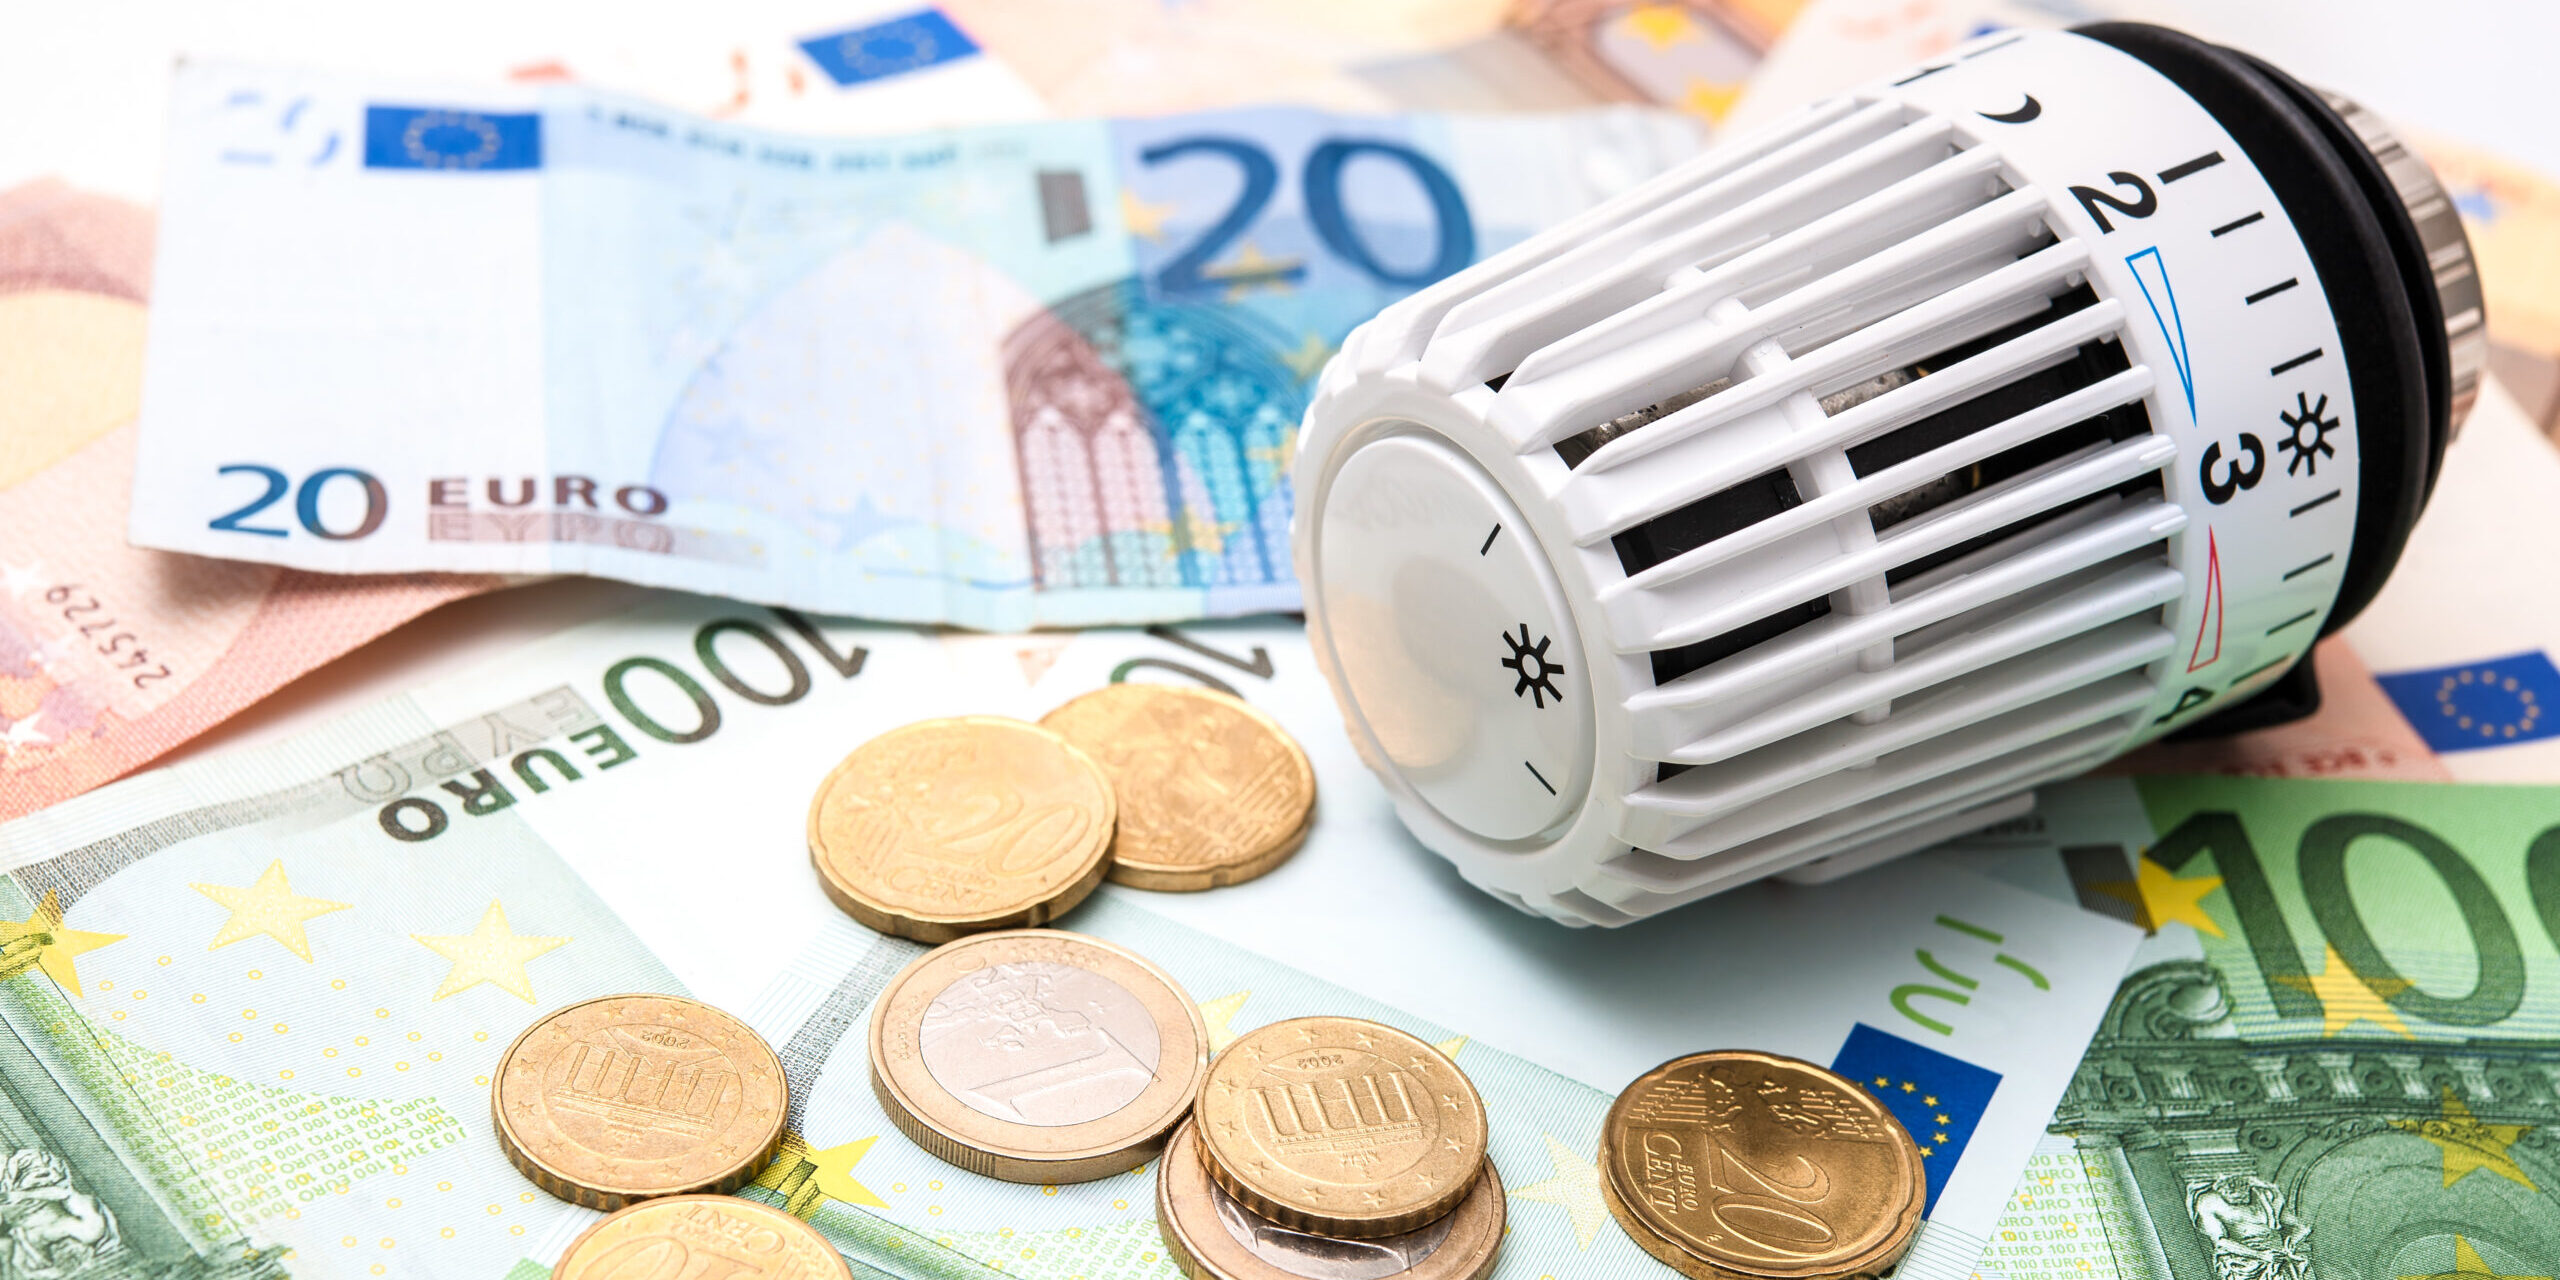 Bundesland-Vergleich der Energiekosten: Wer zahlt am meisten für Strom und Gas?